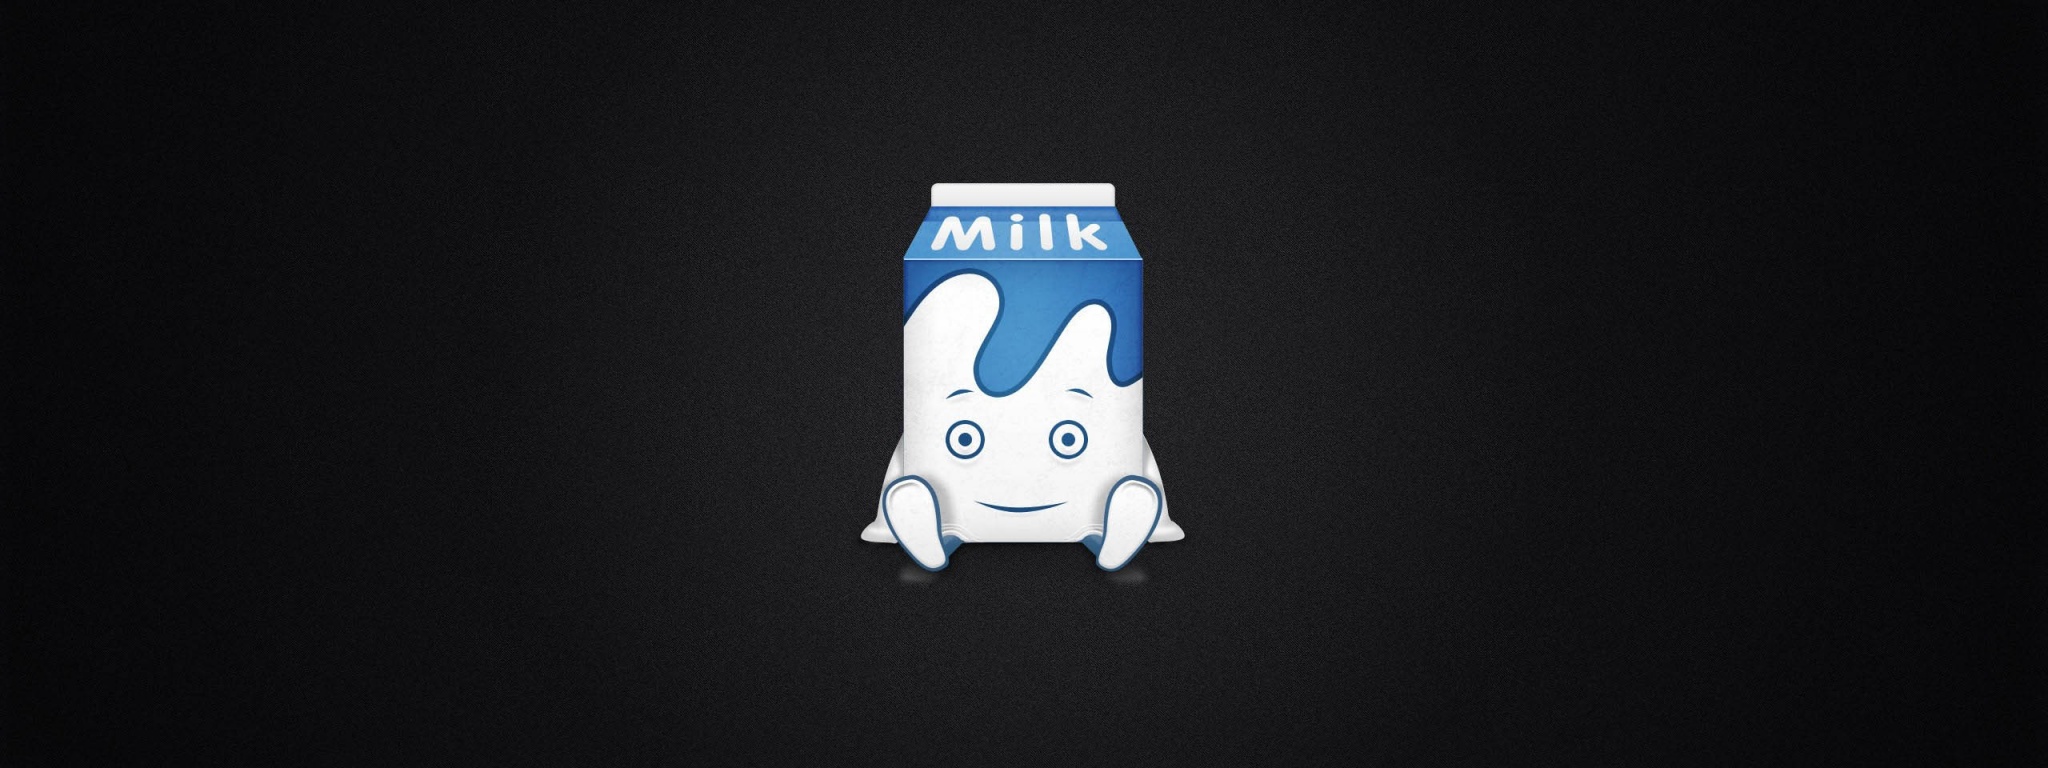 Funny Milk Carton